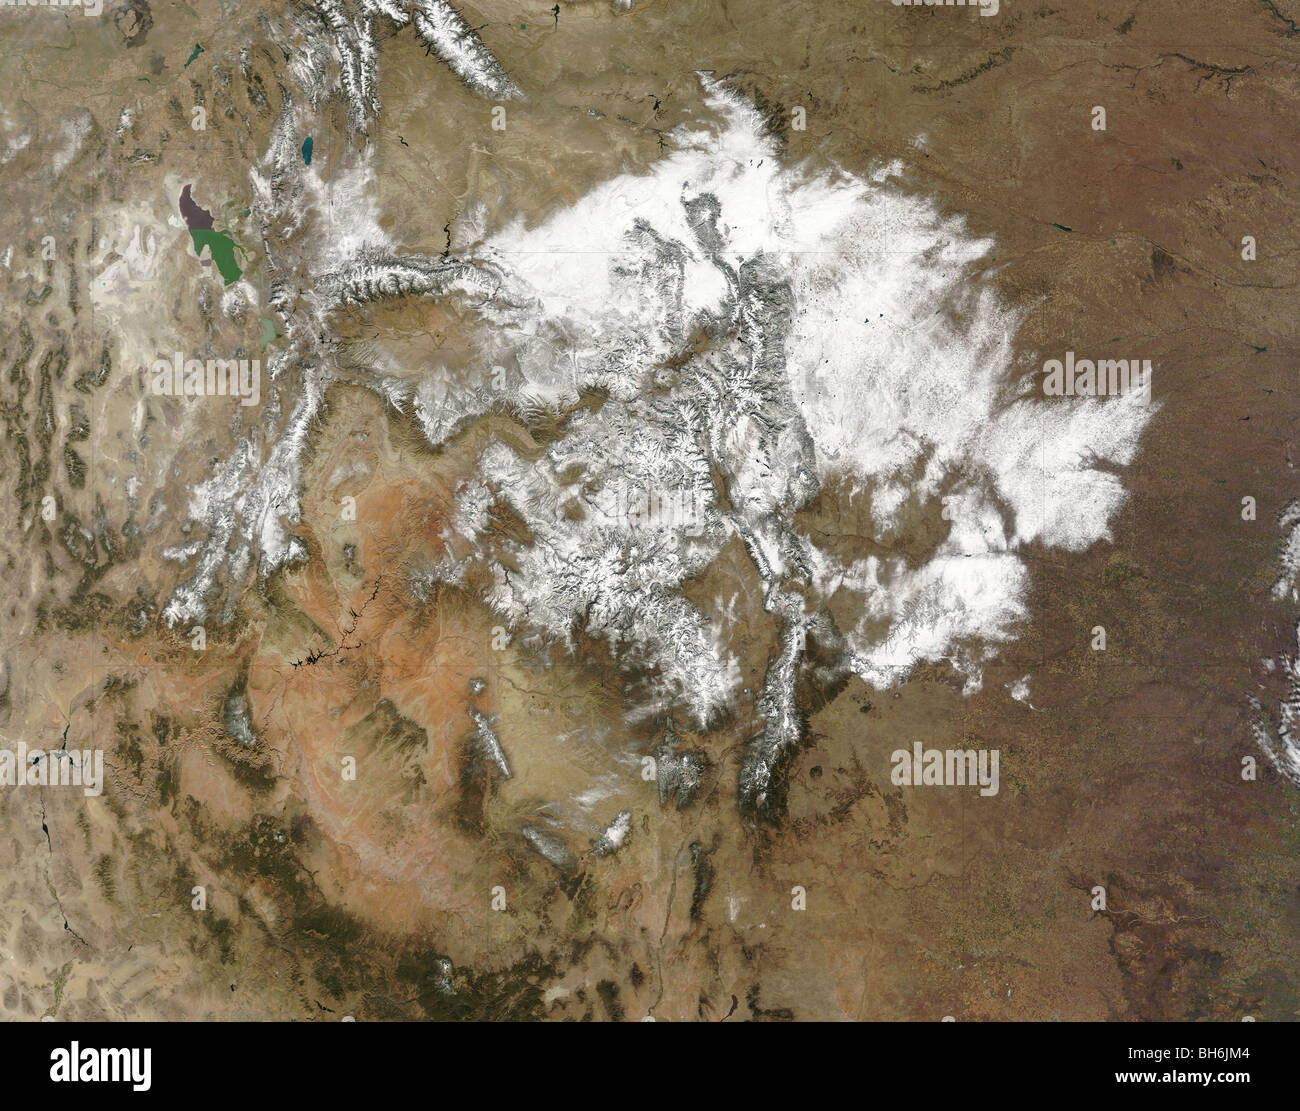 La neige recouvre les montagnes Rocheuses dans l'ouest des États-Unis. Banque D'Images